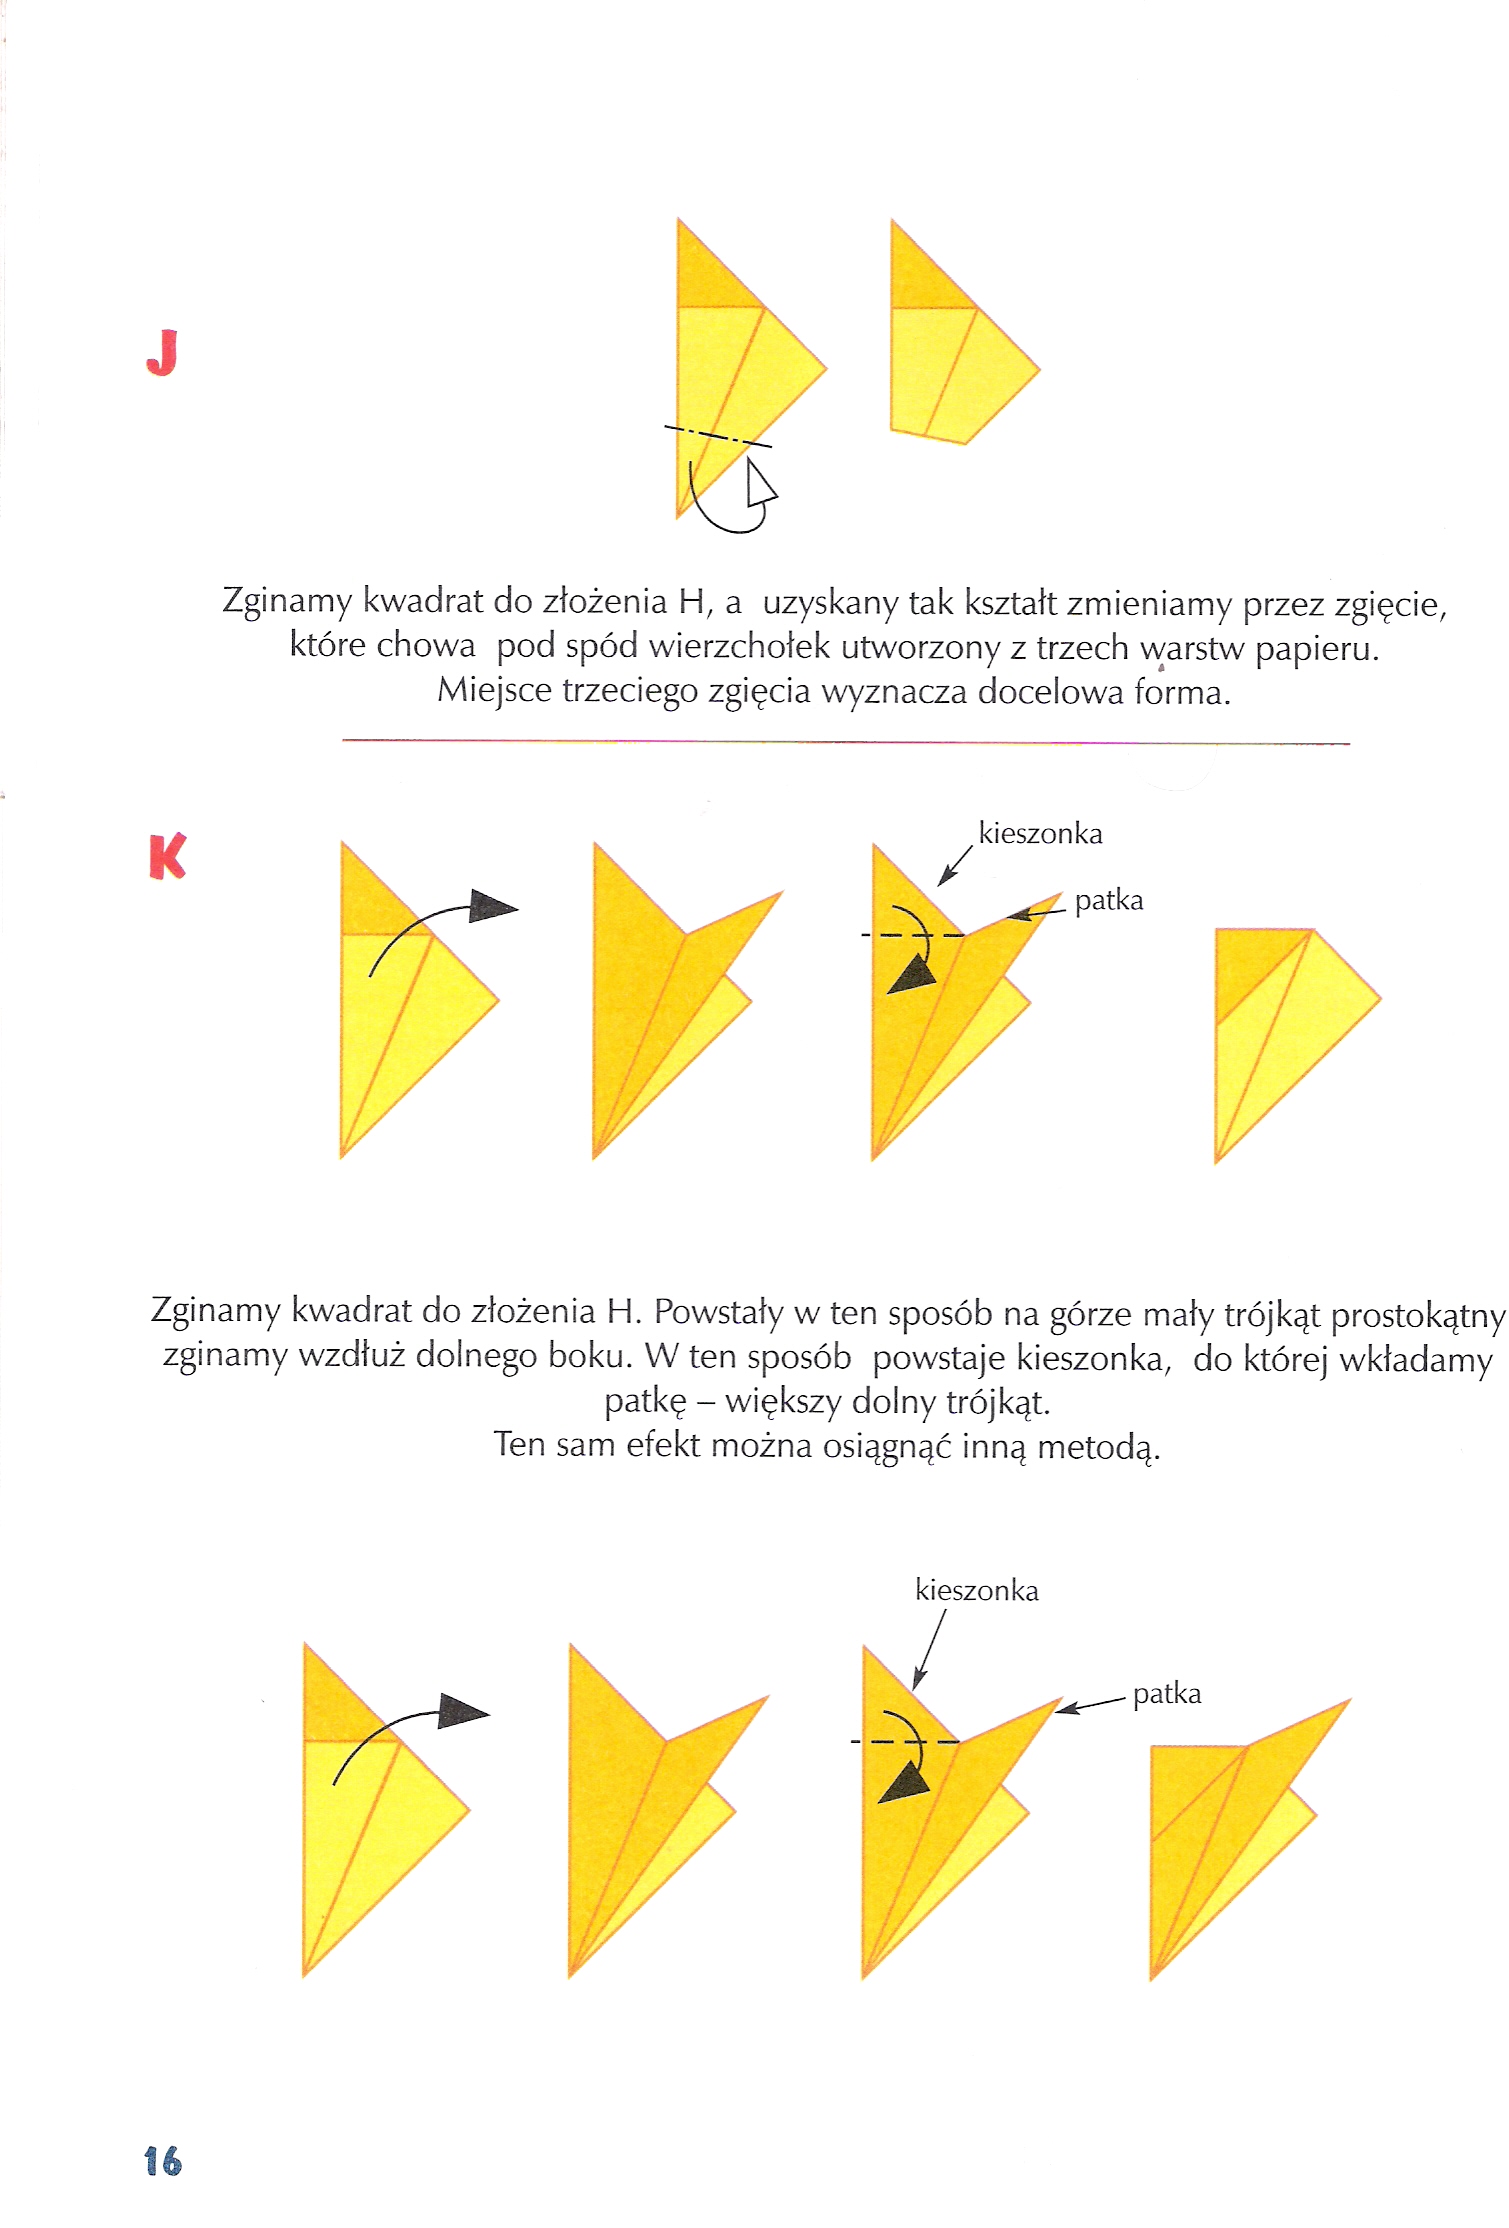 origami płaskie z kwadrata - sposoby zginania kwadratów w origami askie z zkwadratów 4.jpg